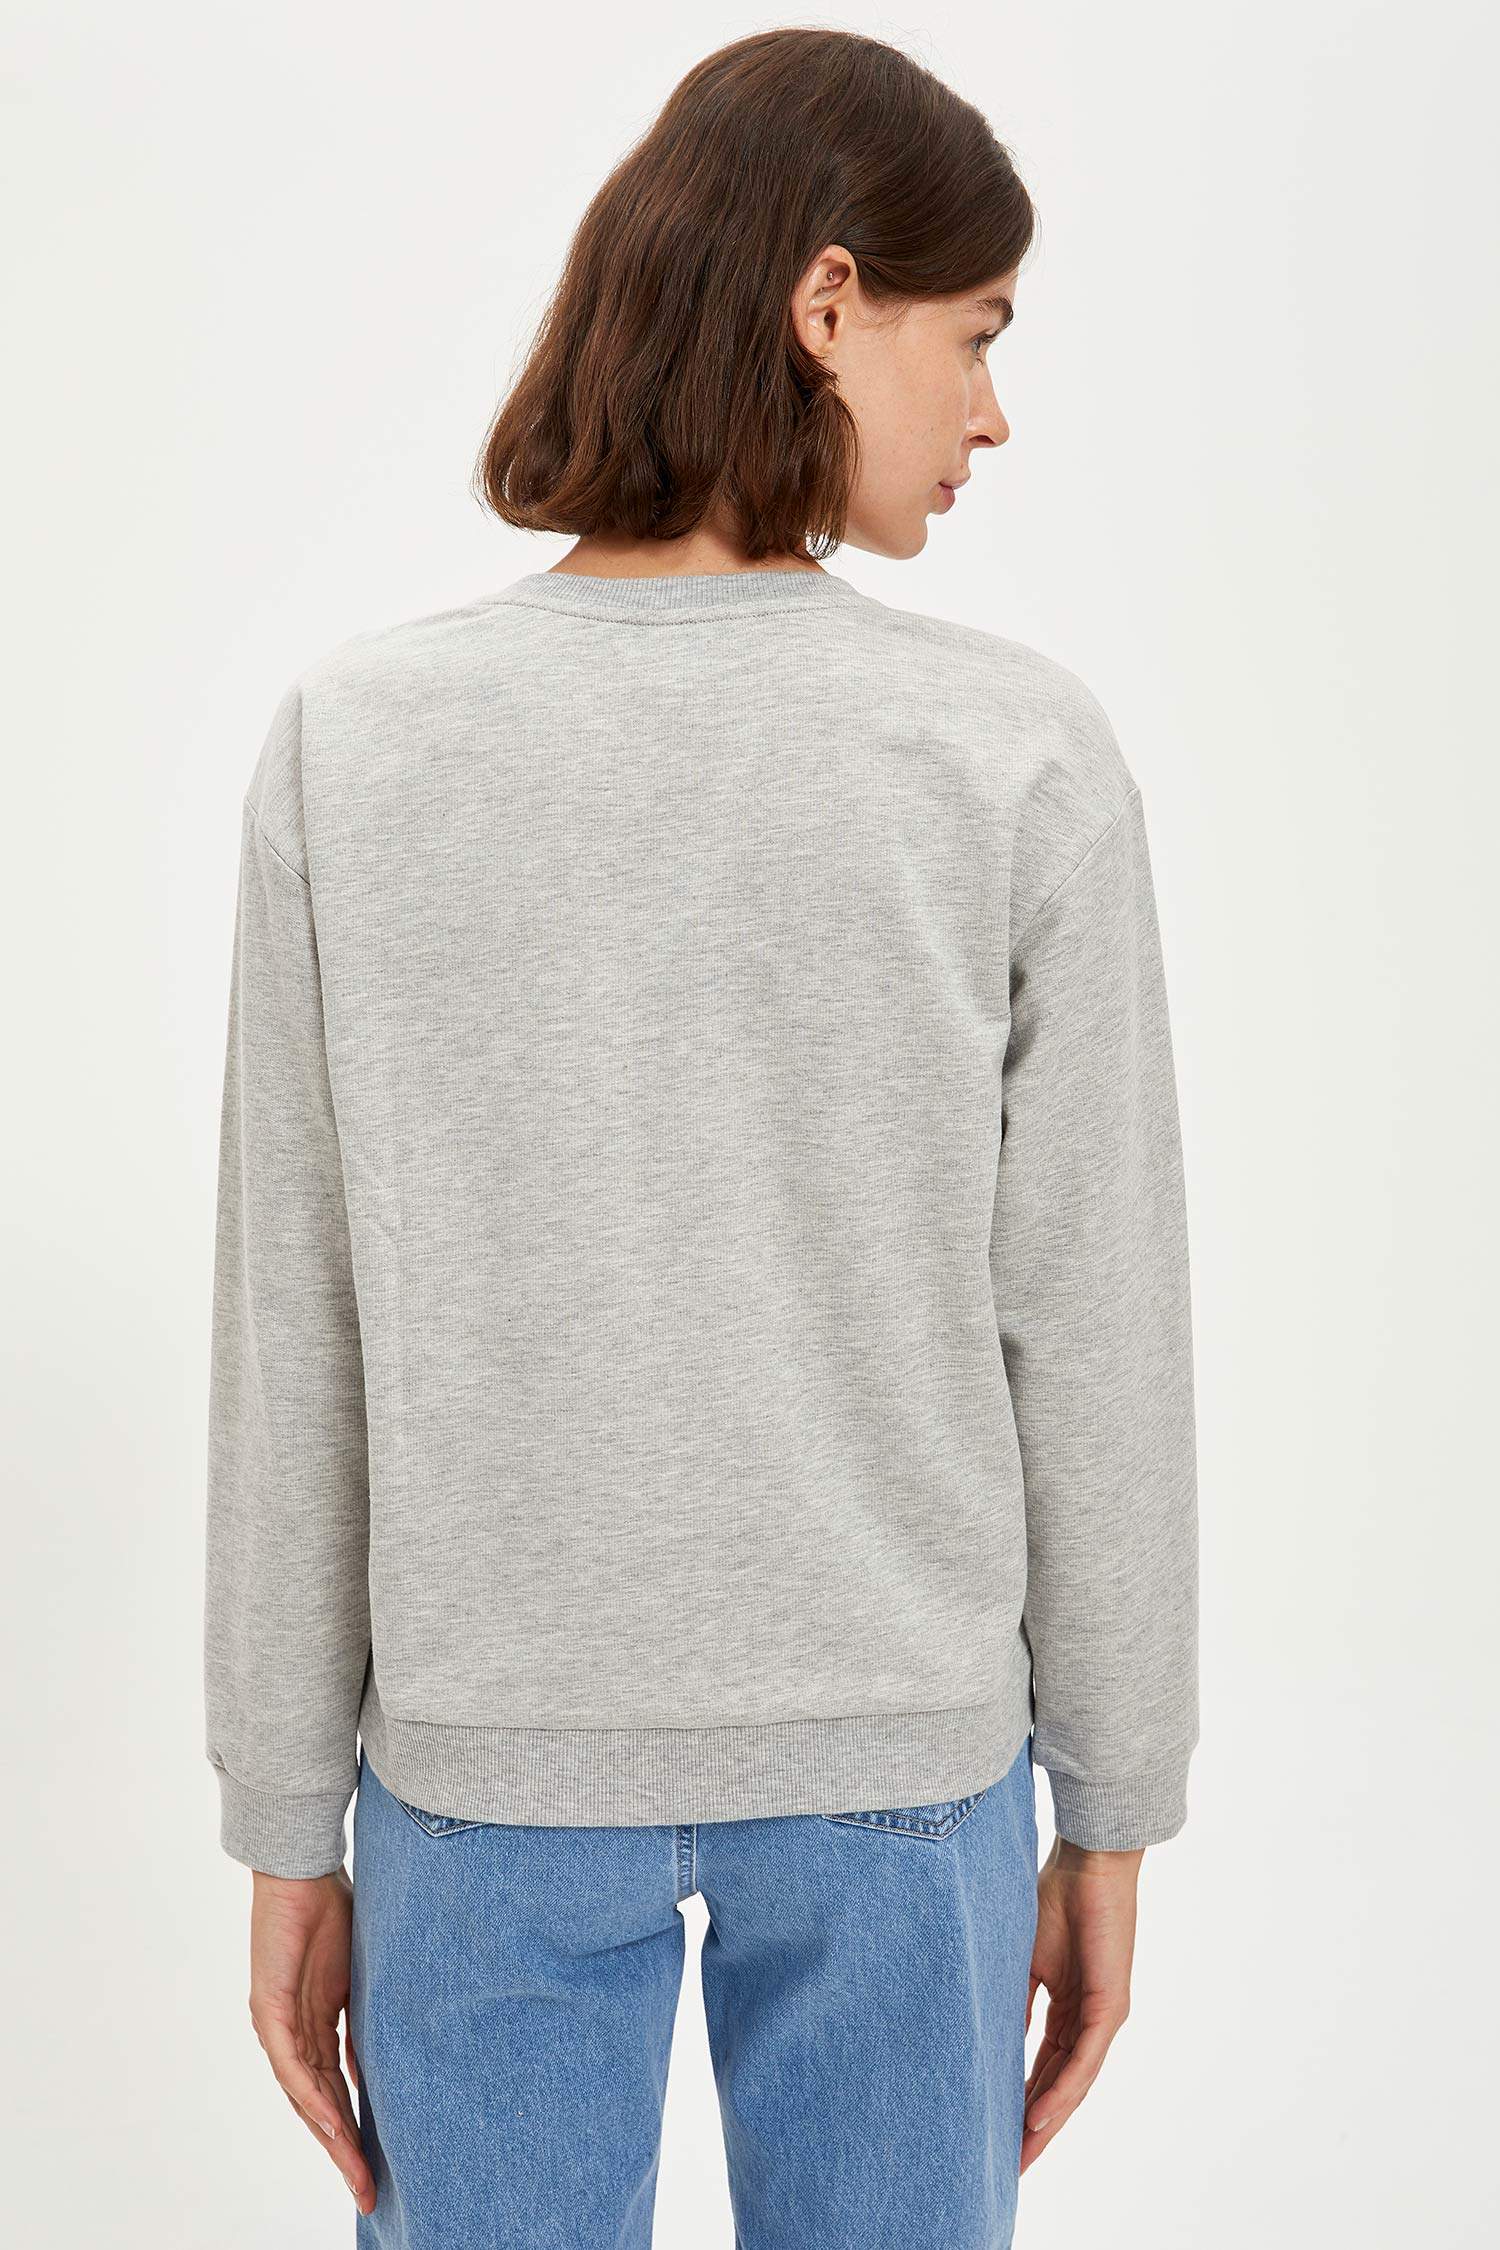 Grey WOMAN Oversize Long Sleeve Printed Sweatshirt 1483997 | DeFacto